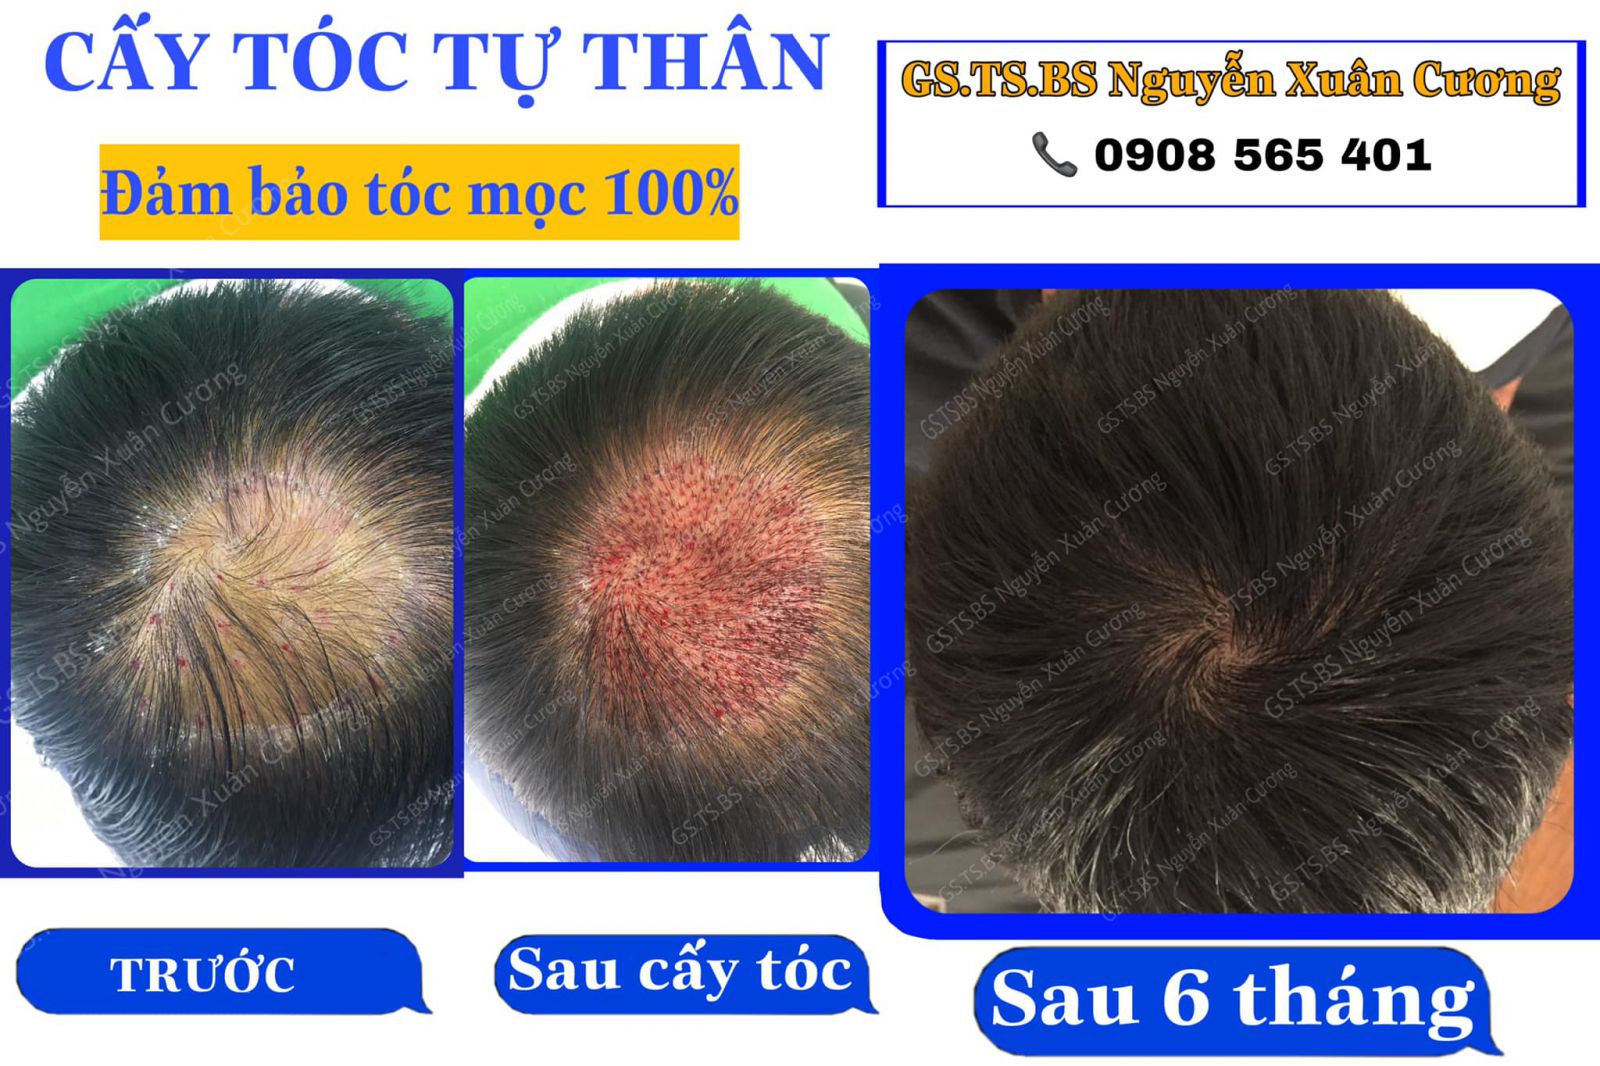 Cấy tóc tự thân giá bao nhiêu nếu làm tại TPHCM